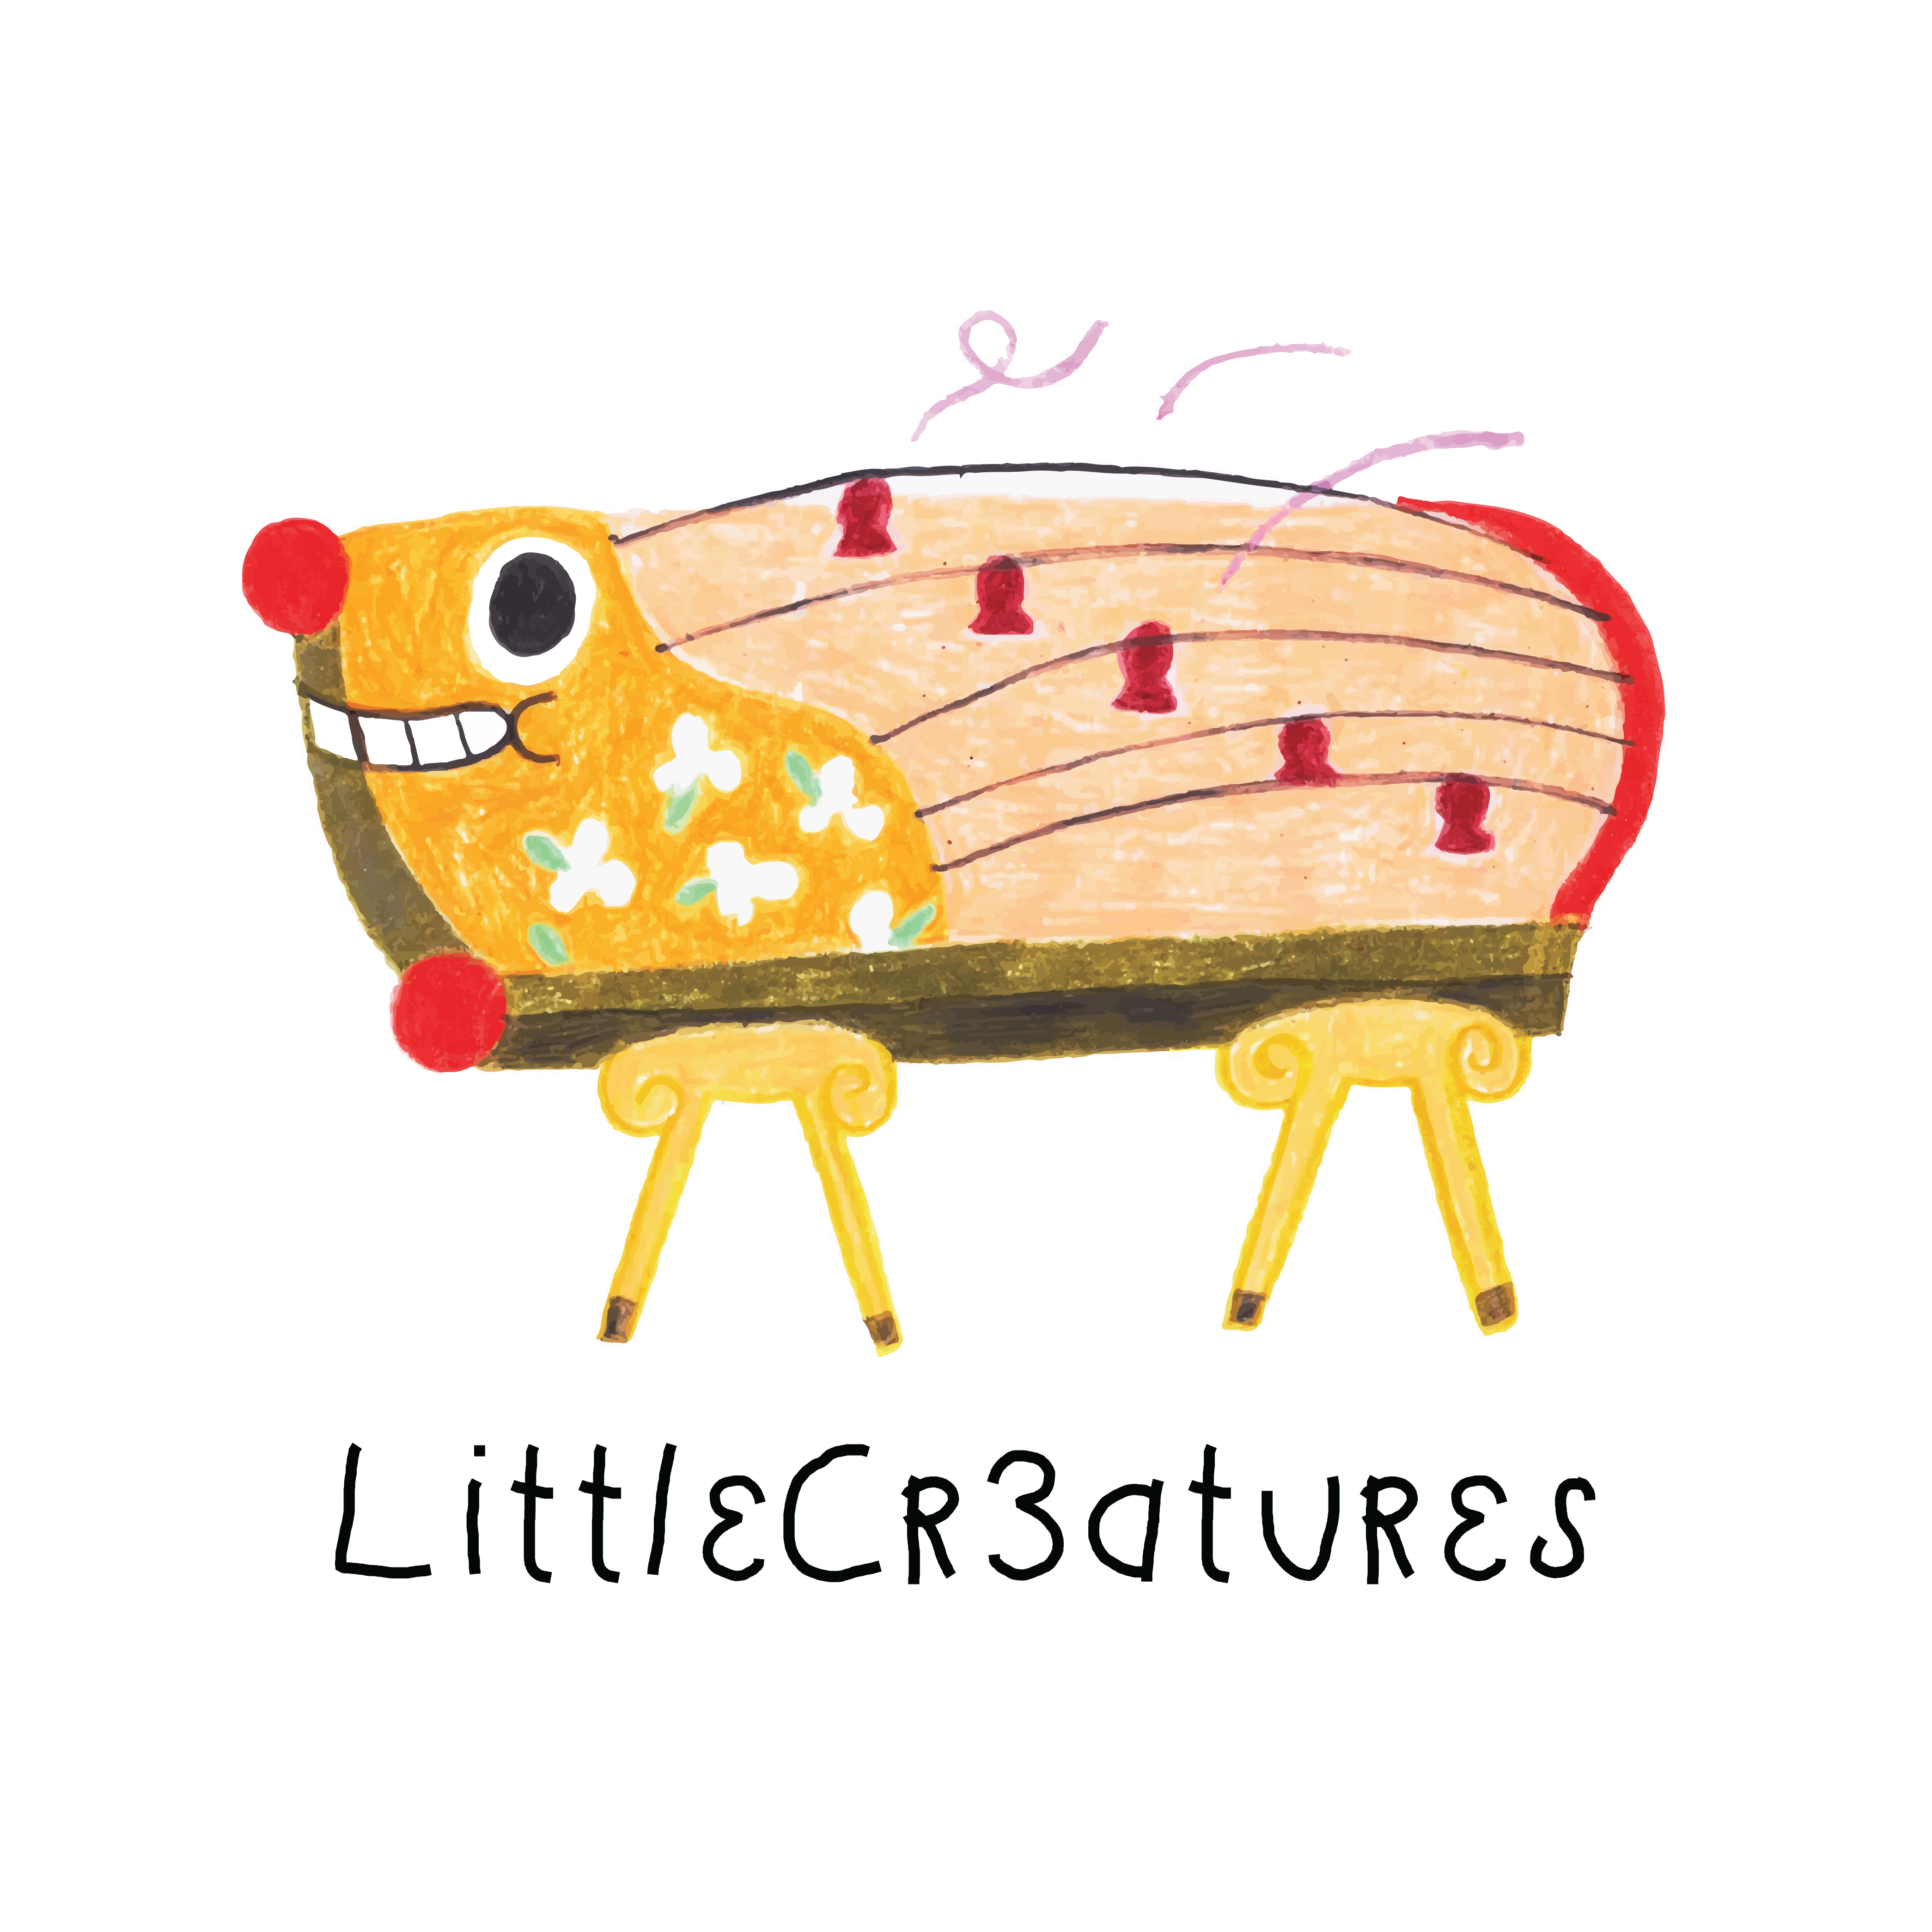 LittleCr3atures